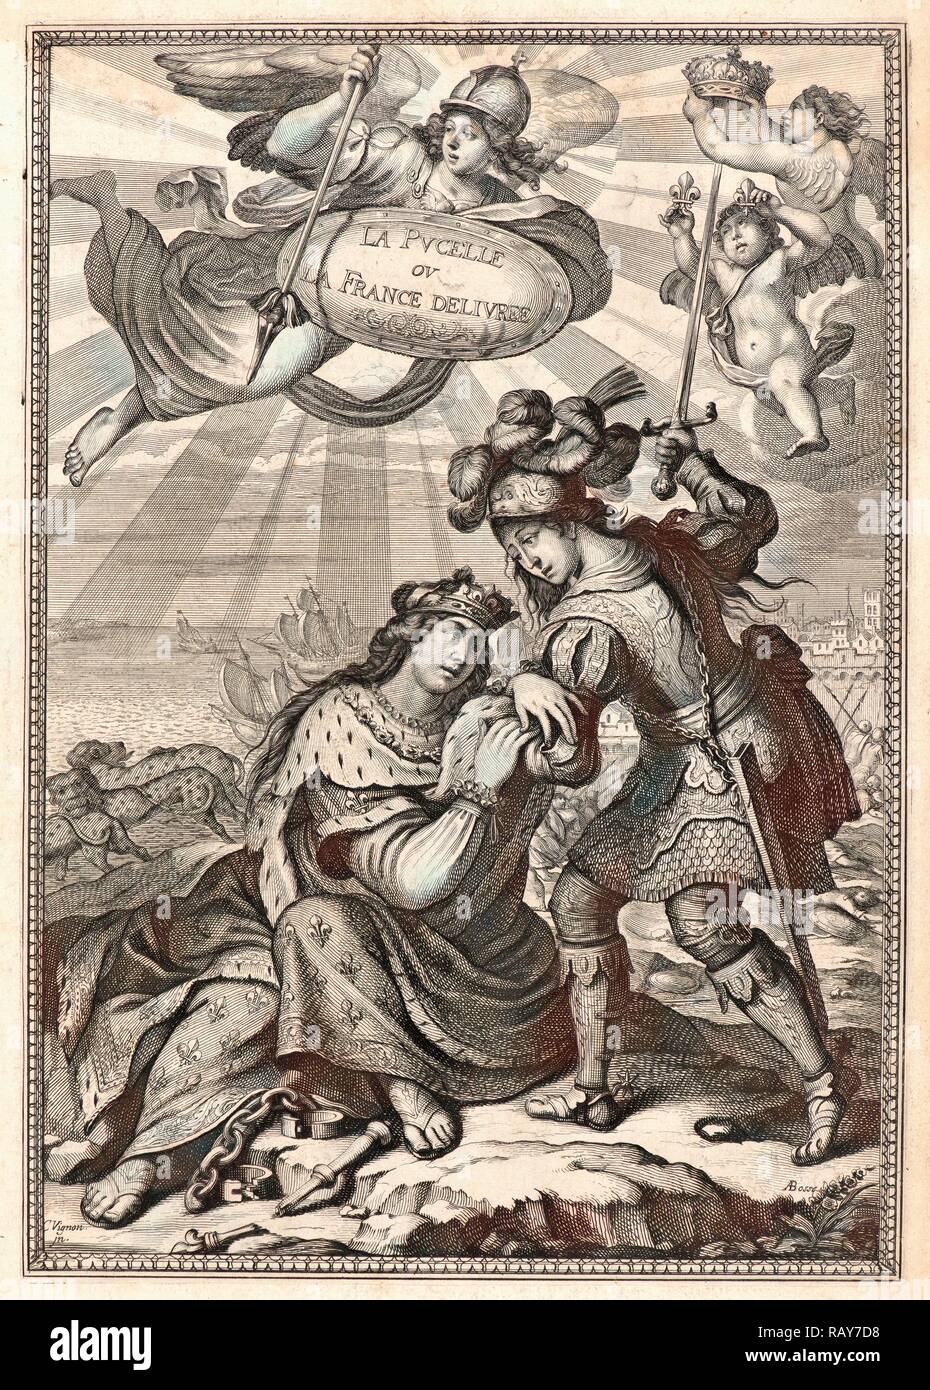 Abraham Bosse (Français, 1602-1676) après Claude Vignon (Français, 1593 - 1670). Page de titre de Jeanne d'Arc, ou France repensé Banque D'Images